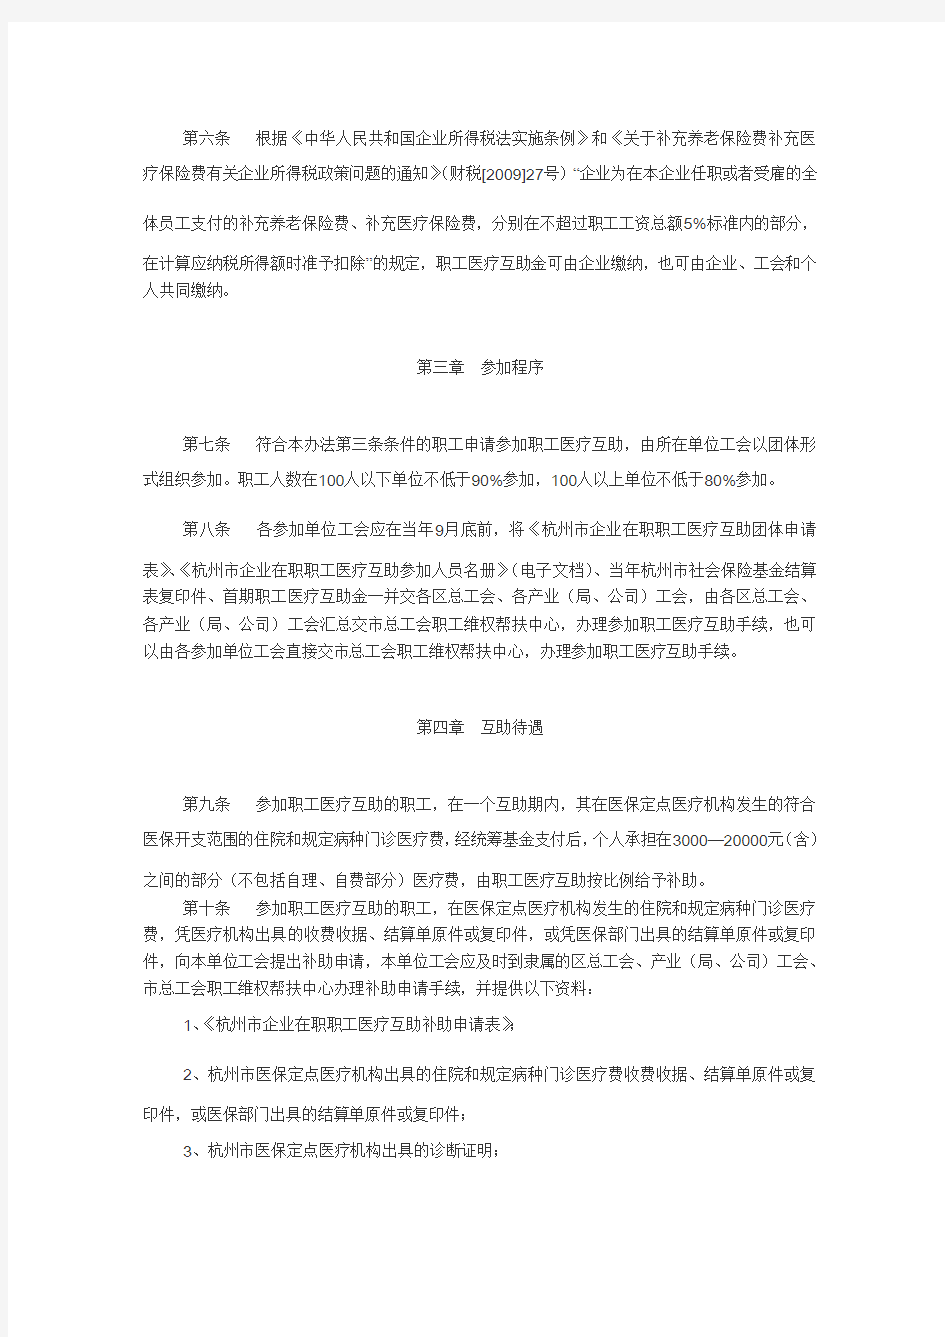 杭州市企业在职职工医疗互助办法